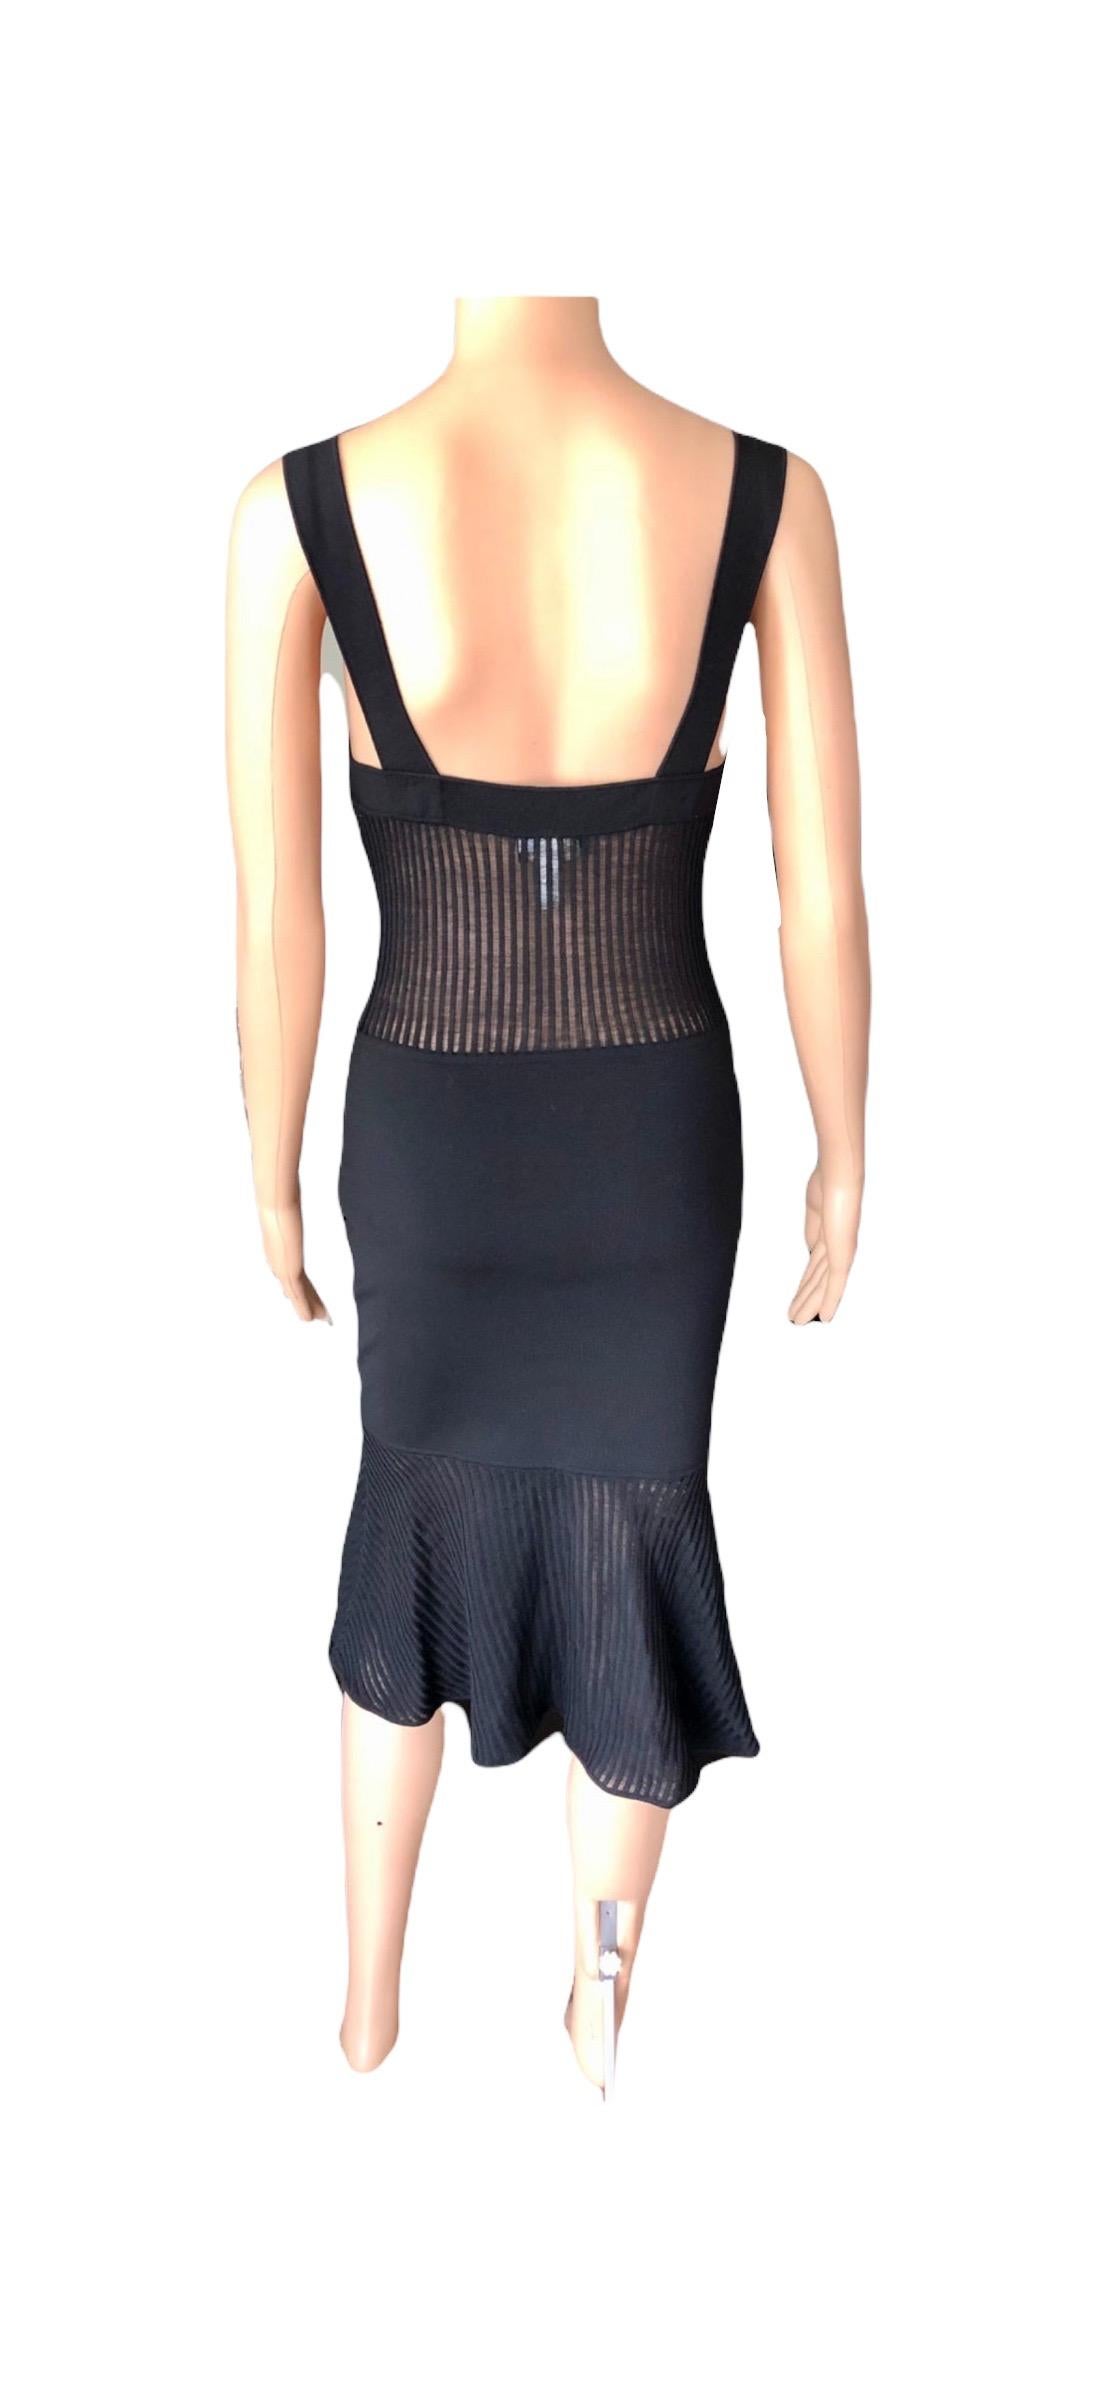 Gianni Versace 1990’s Vintage Sheer Knit Black Dress For Sale 8